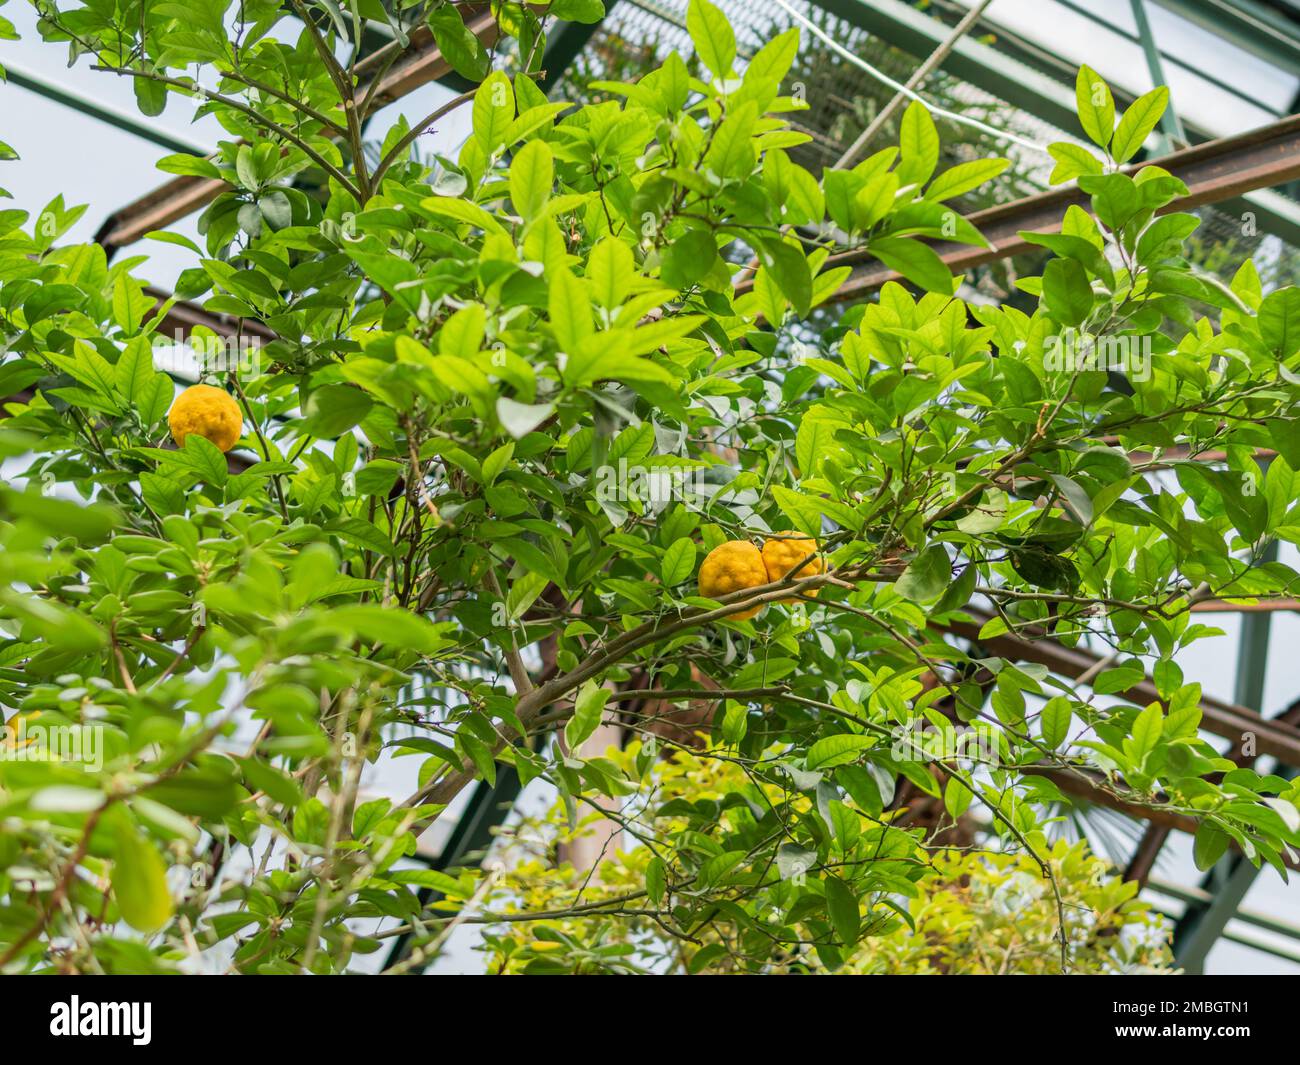 Citrus bergamia or bergamot orange. Citrus fruits among green leaves of tree foliage. Stock Photo